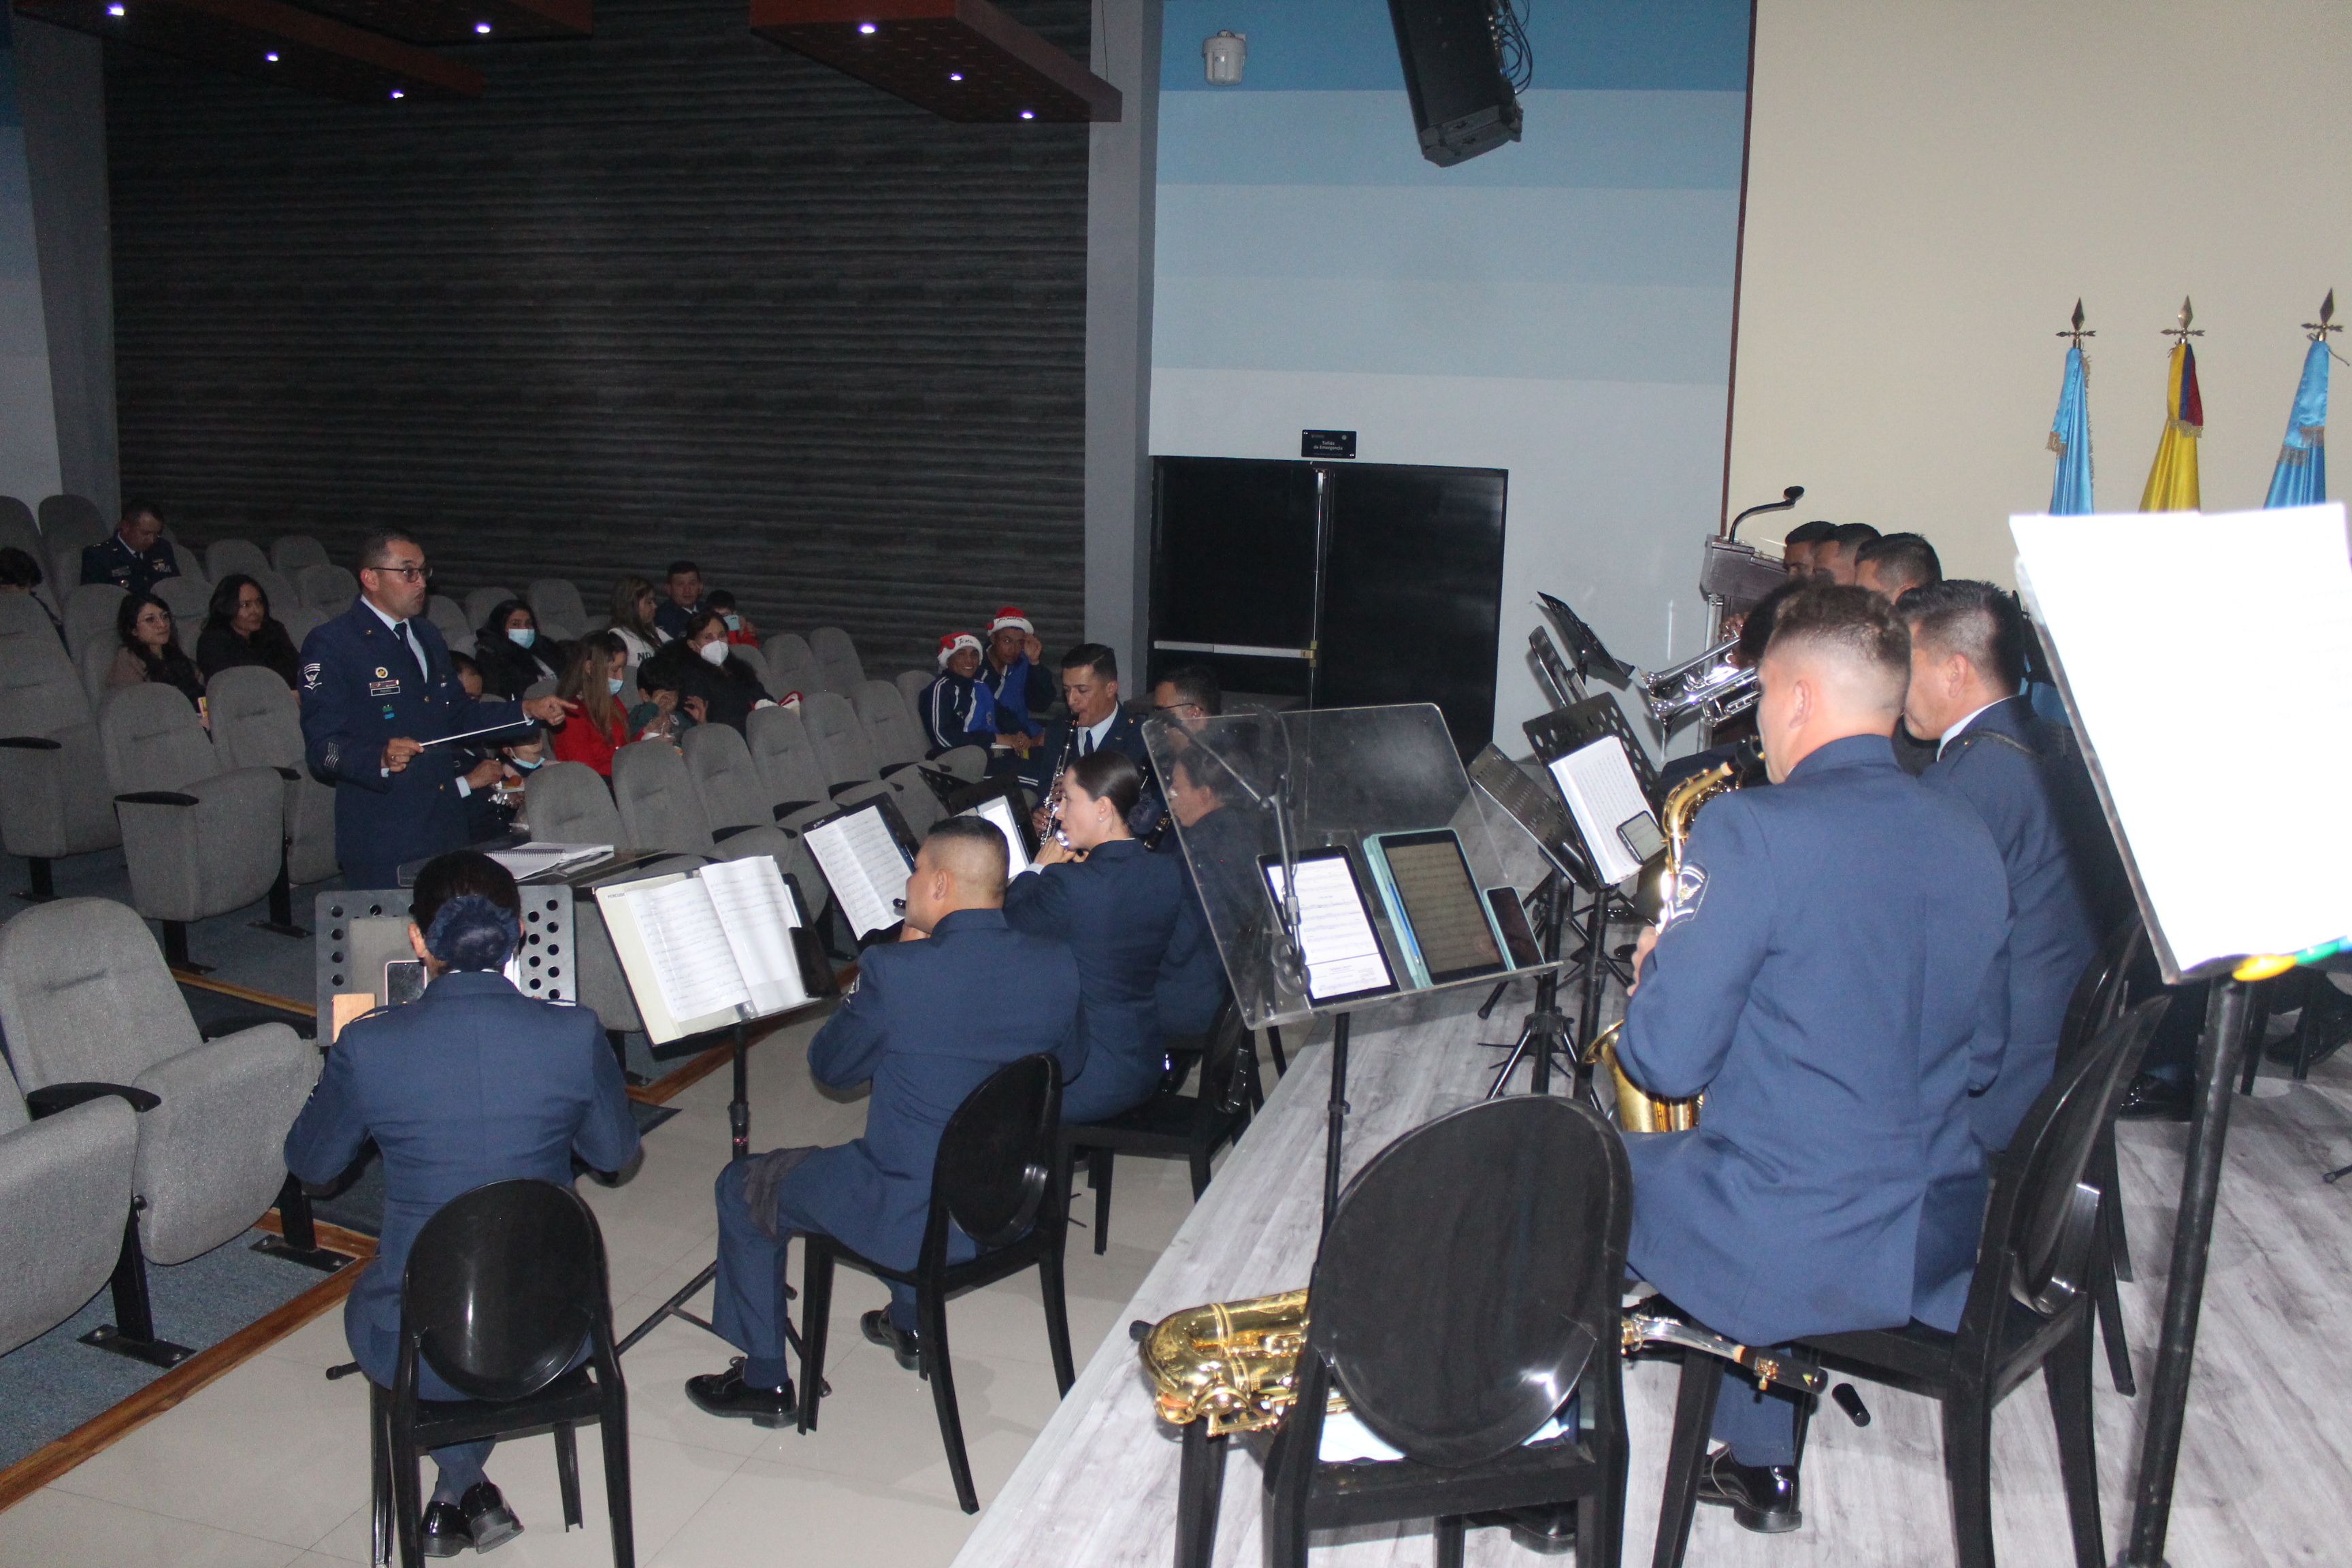 La banda sinfónica “Blue Skies” dio inicio a la navidad en la ESUFA